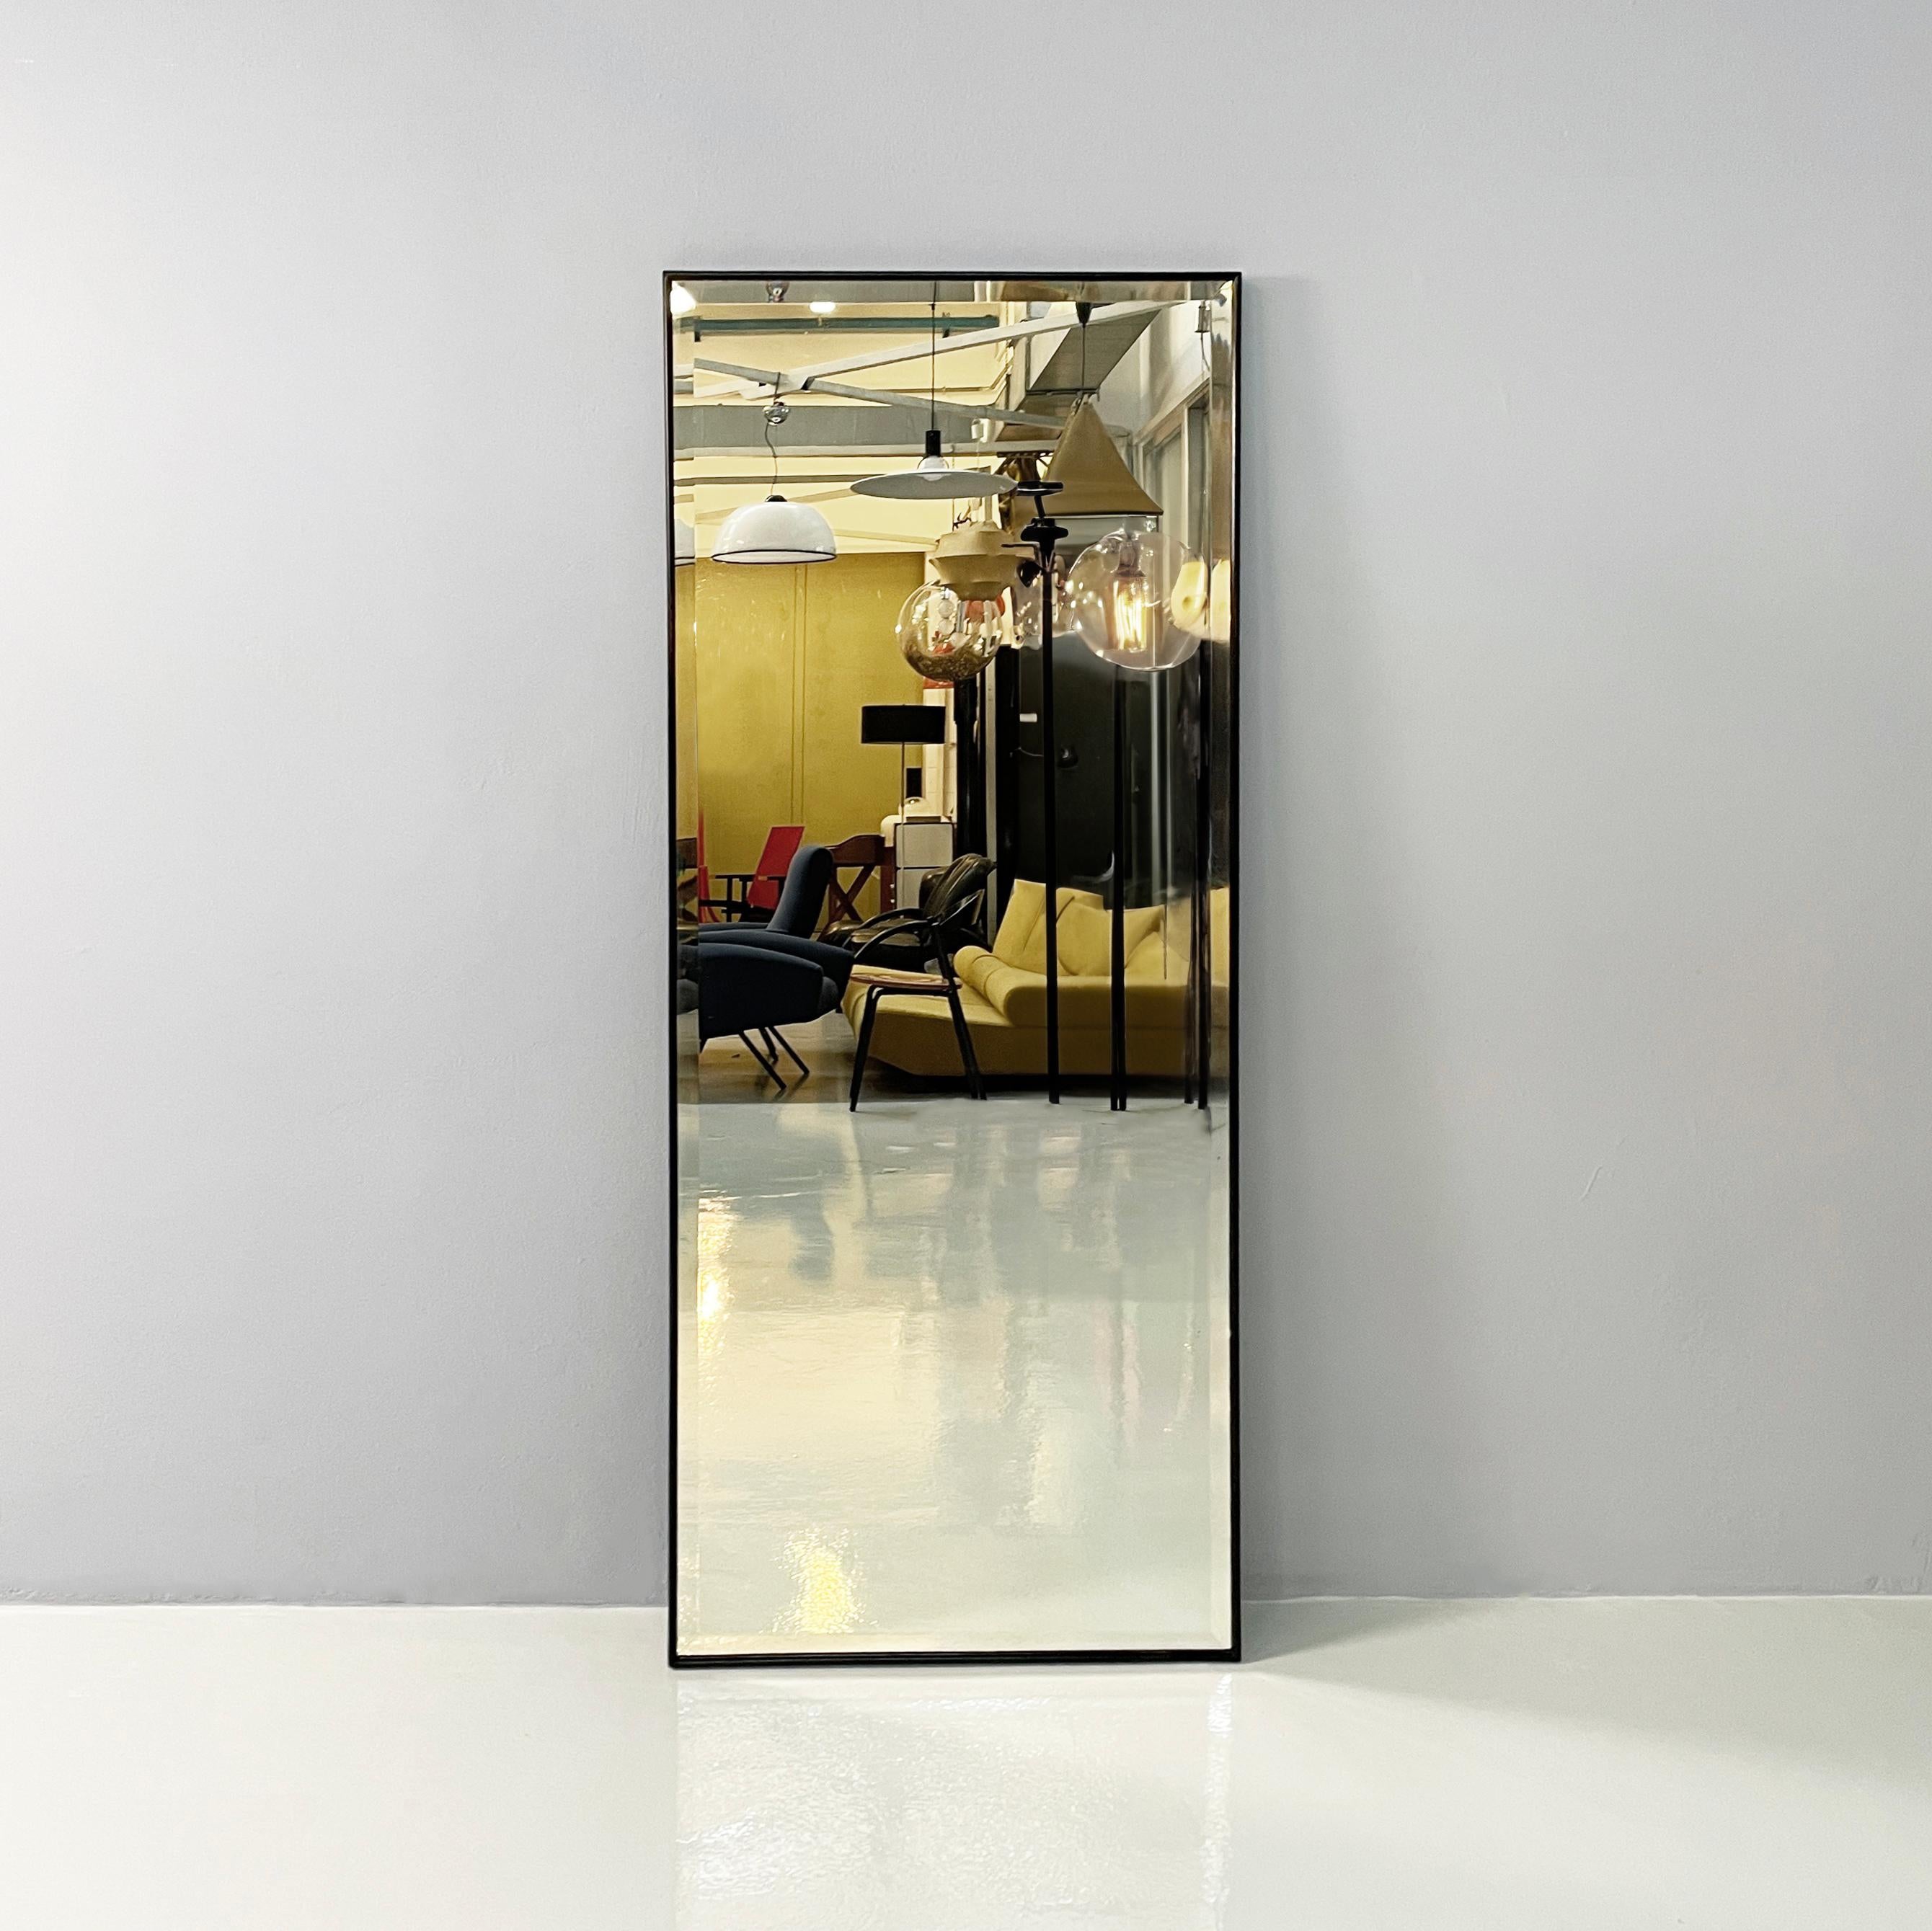 Italienische Moderne Rechteckiger Spiegel mit schwarzem Holzrahmen, 1990er Jahre
Rechteckiger Wandspiegel mit abgerundetem Profilrahmen aus schwarz lackiertem Holz. Die Struktur ist vollständig aus Massivholz gefertigt. Die Besonderheit dieses